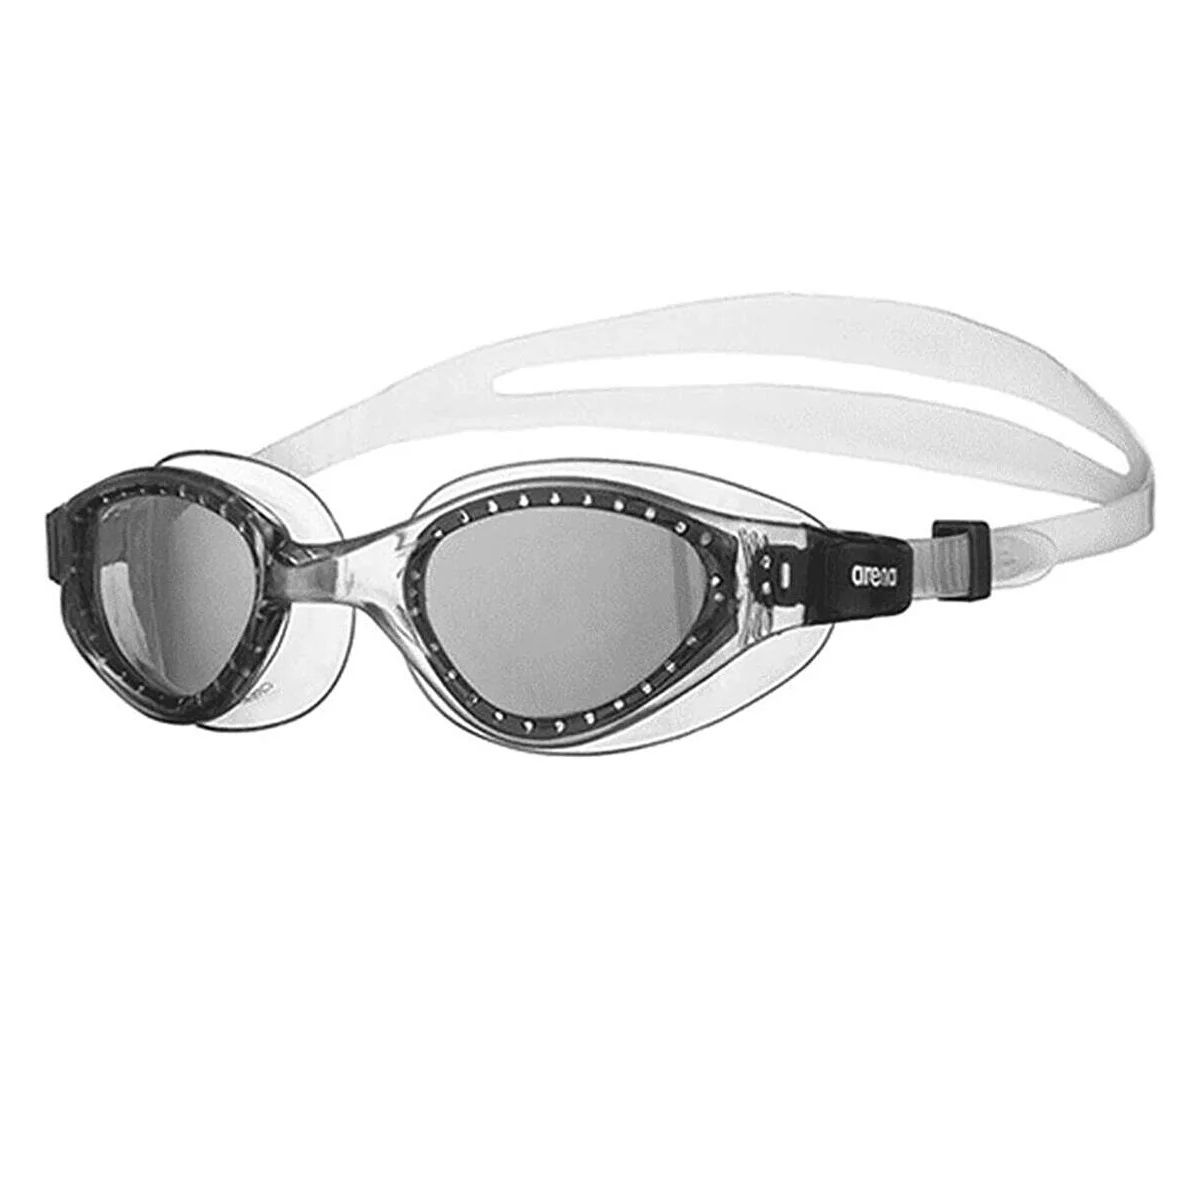 عینک شنا آرنا مدل Cruıser Evo -  - 1